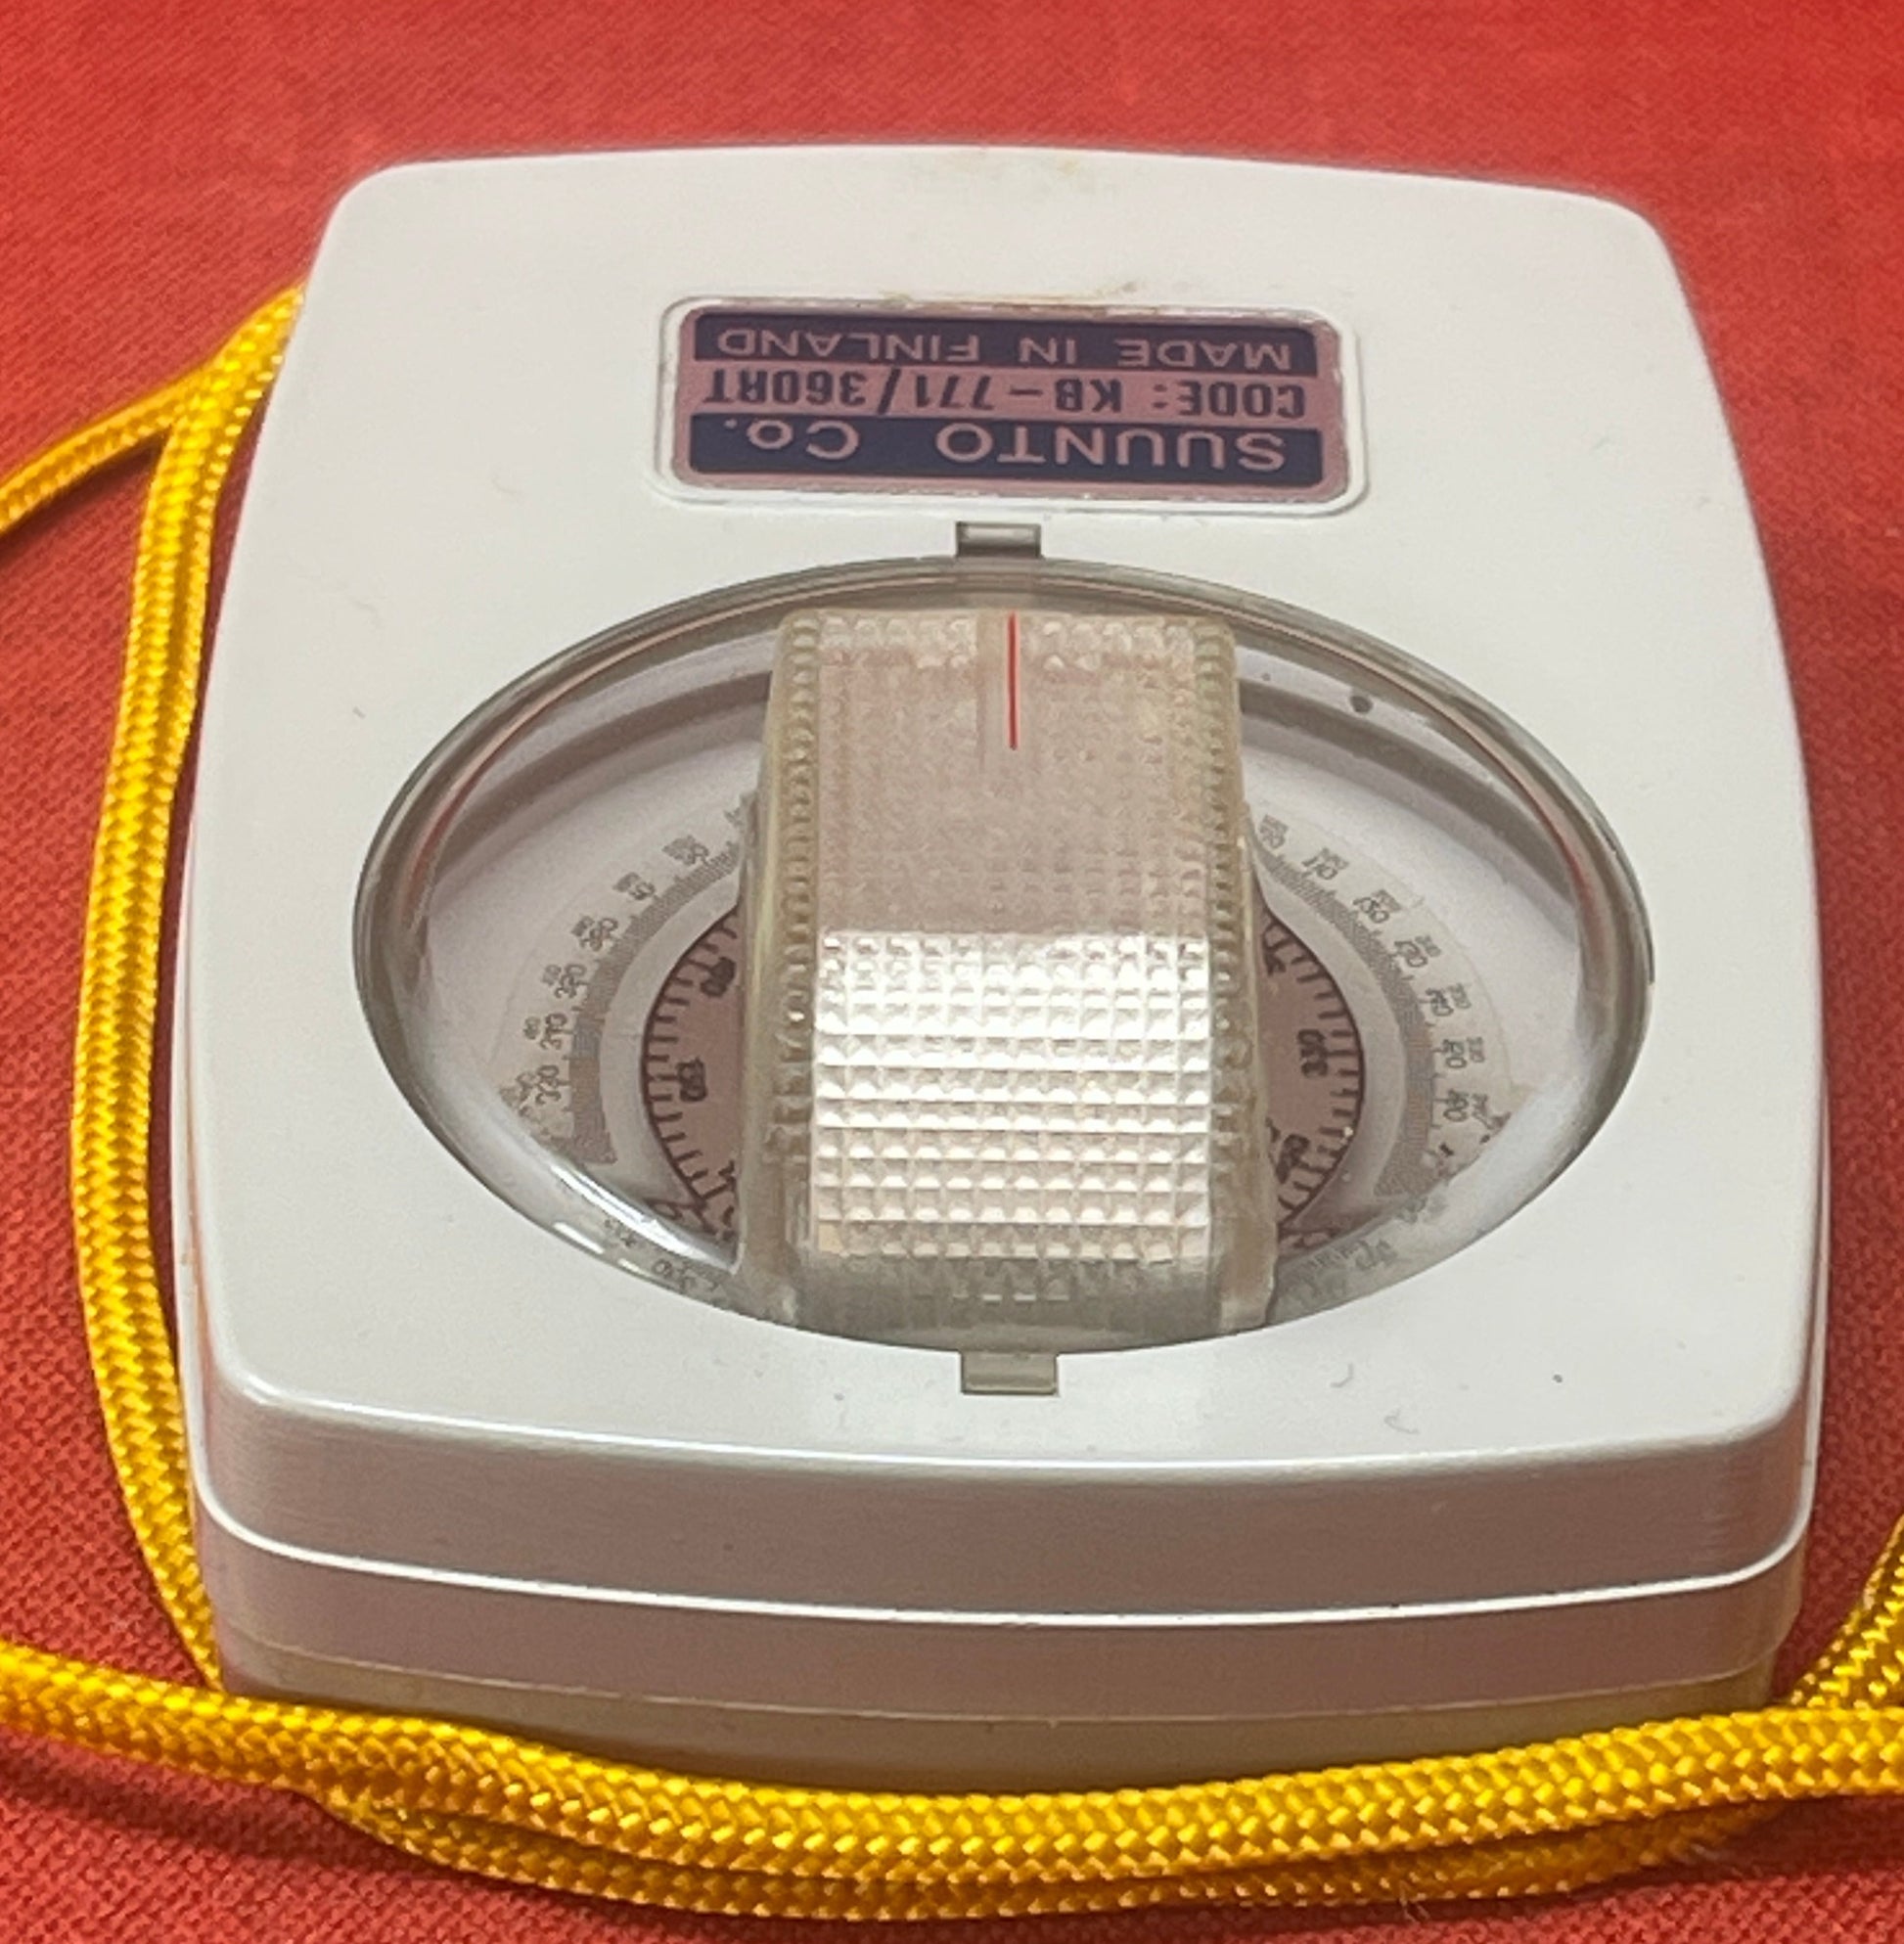 Vintage Suunto Precision Compass  KB-77/360